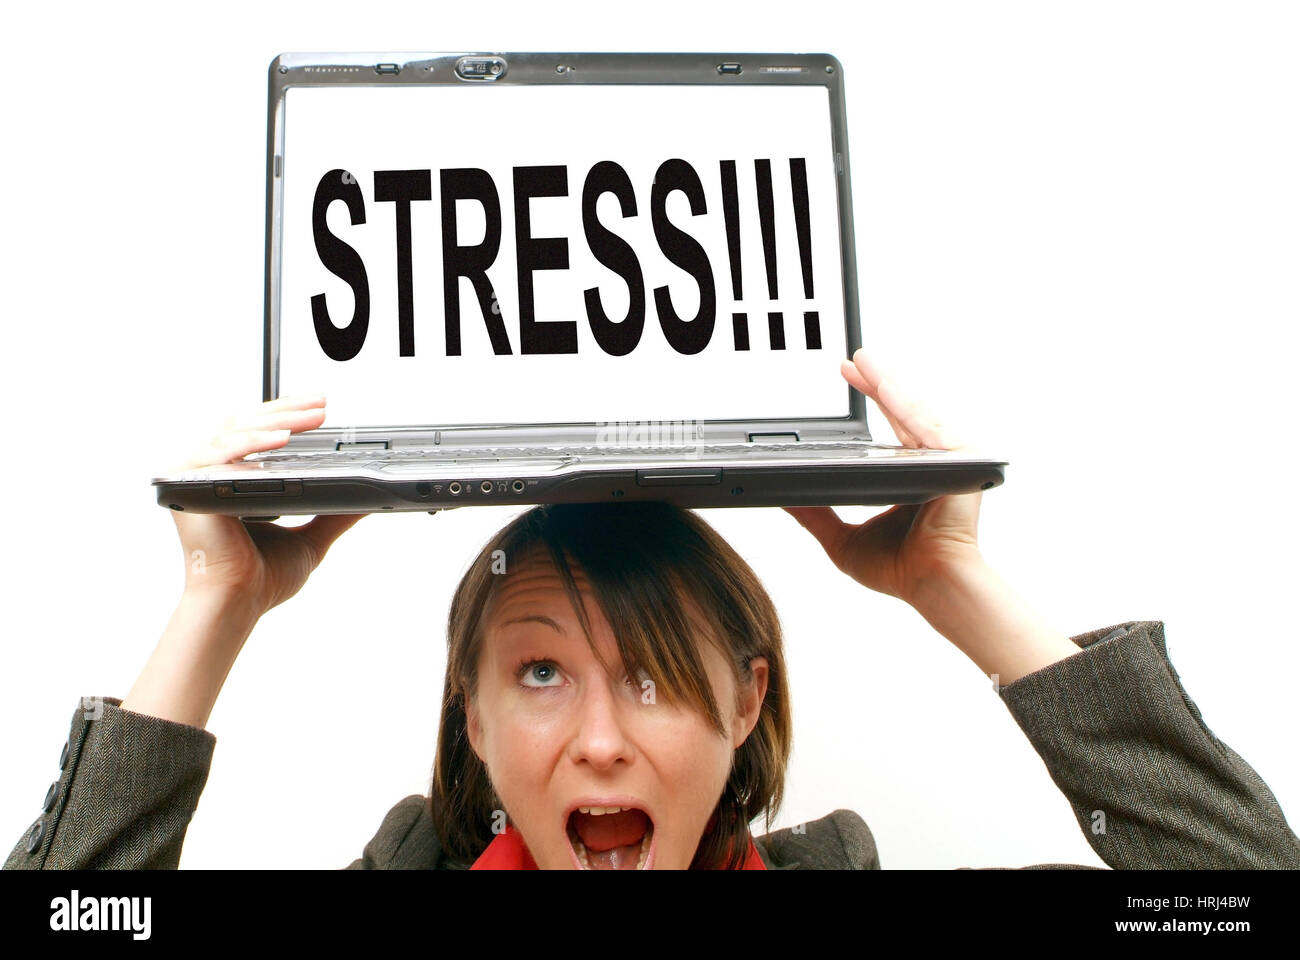 Gesch?ftsfrau mit Laptop am Kopf, Symbolbild Stress - la donna di affari con computer portatile sulla testa, simbolico per lo stress Foto Stock